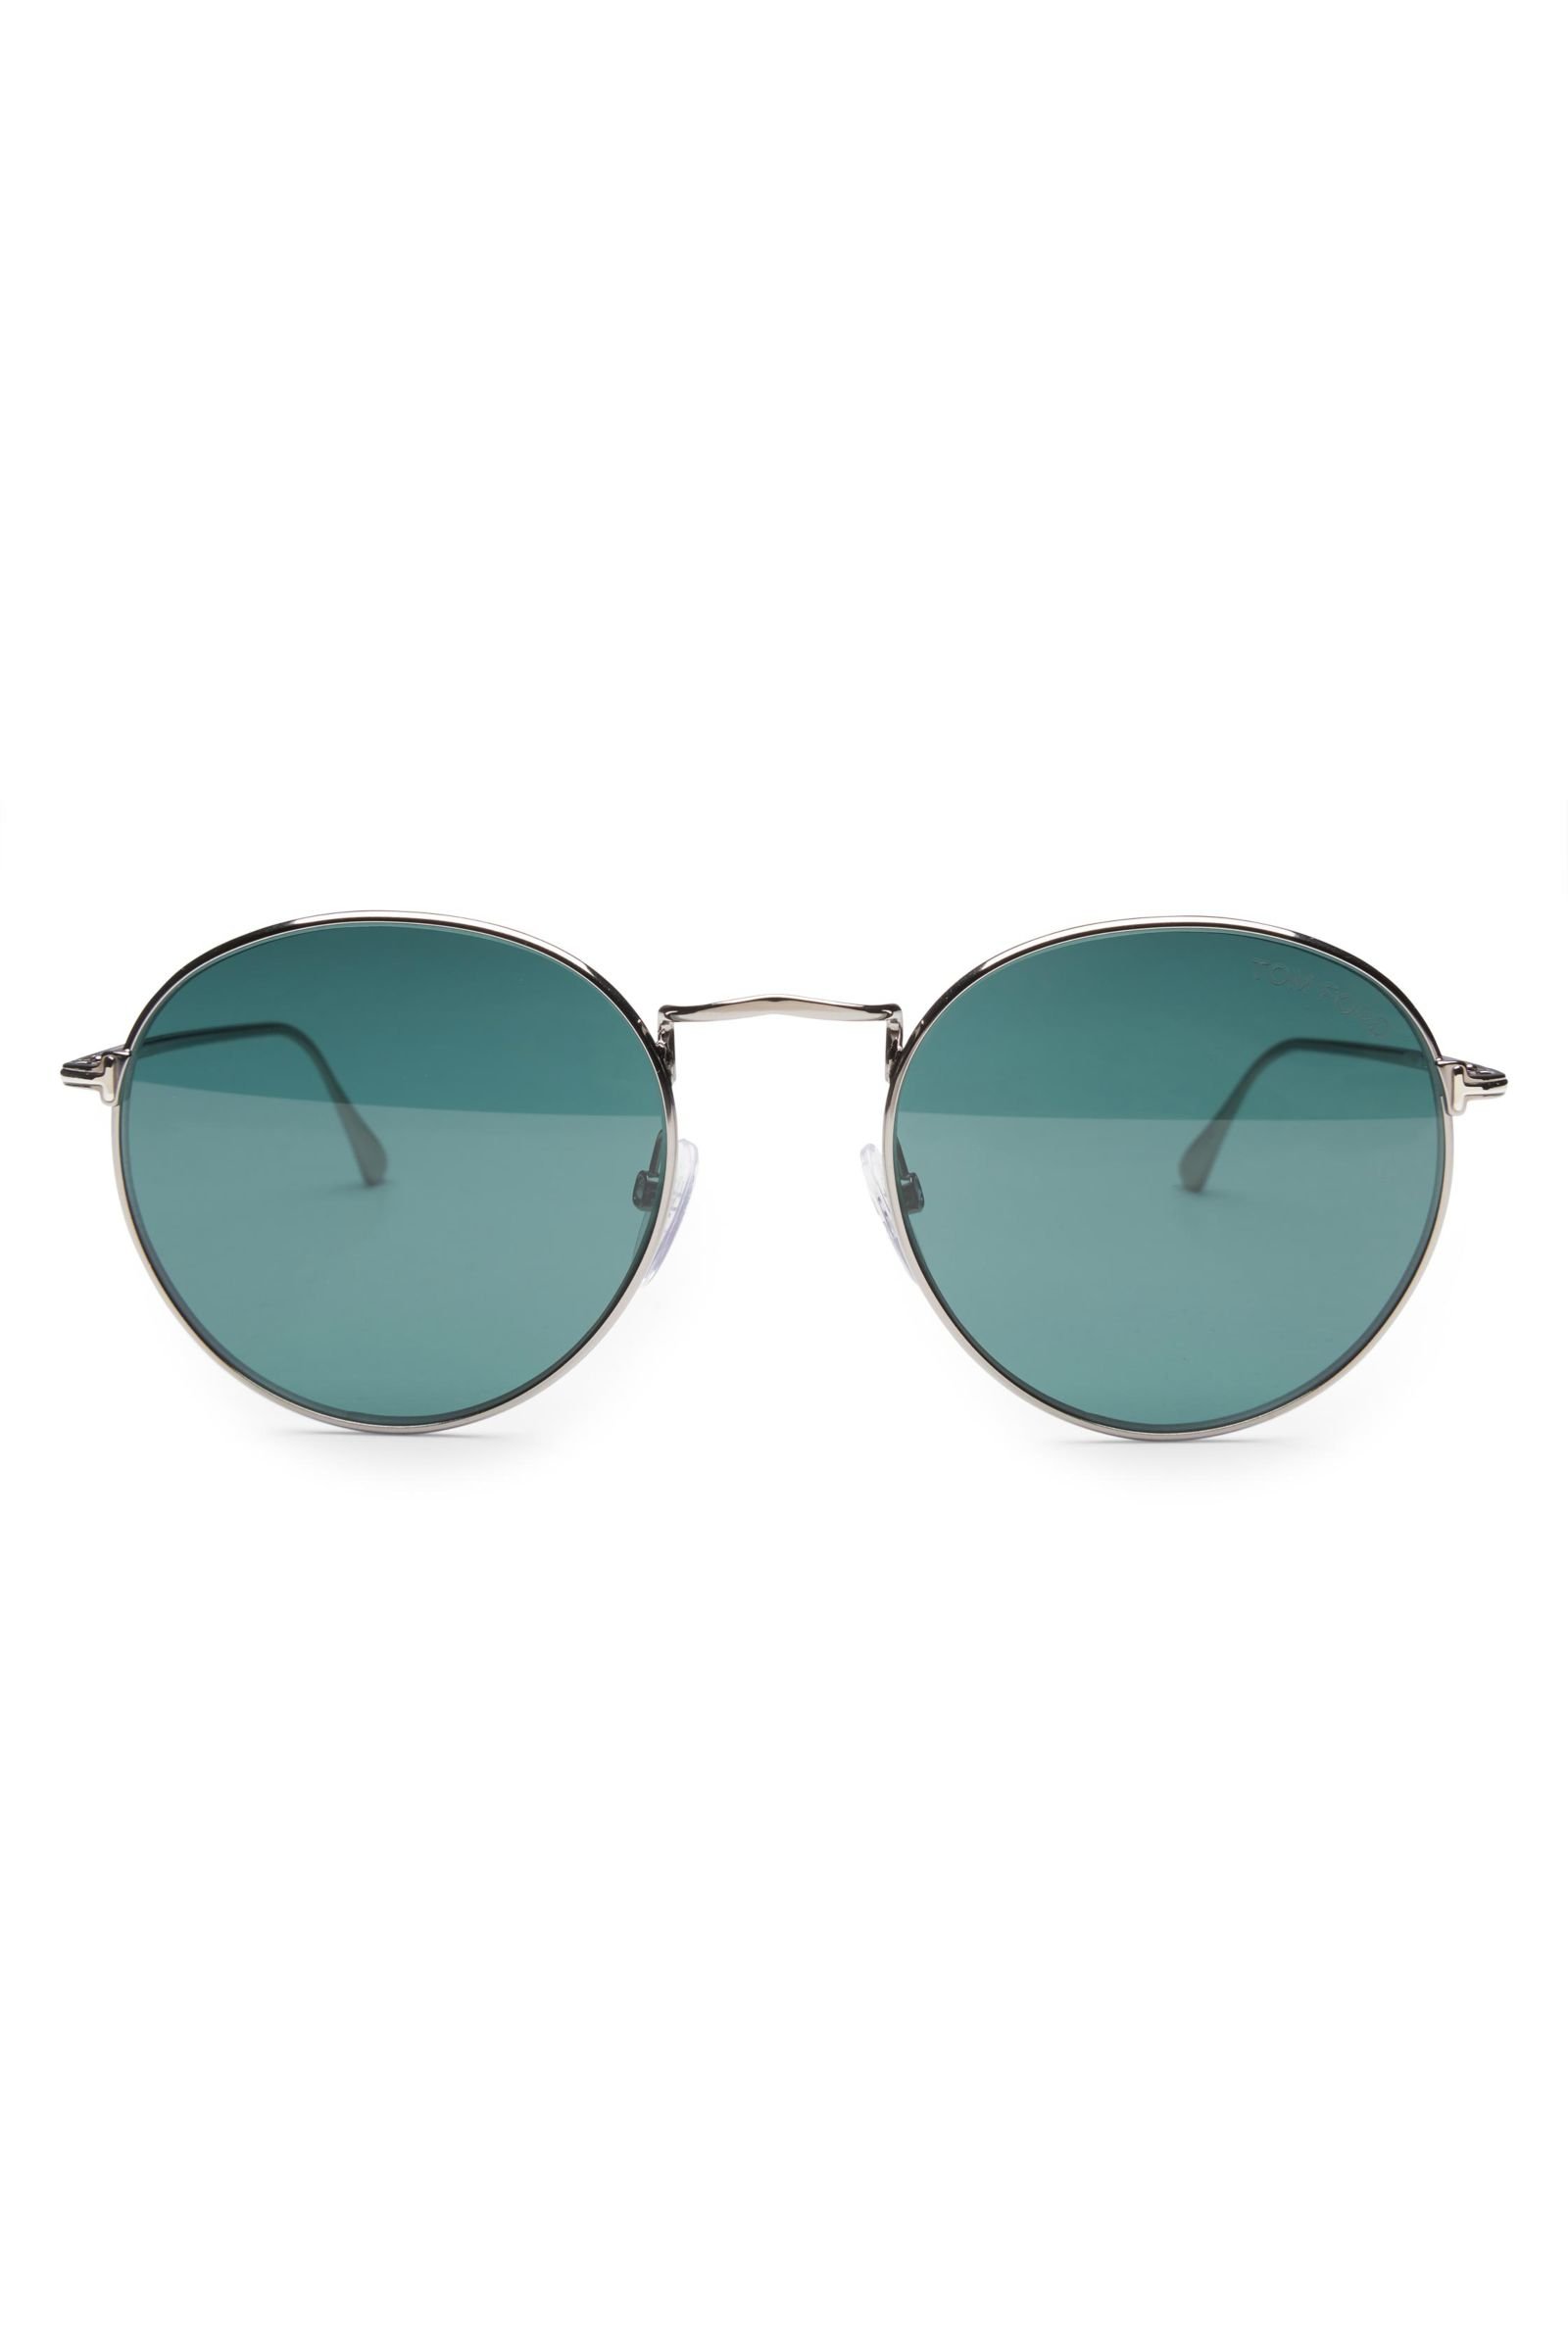 Sonnenbrille 'Ryan' silber/grün